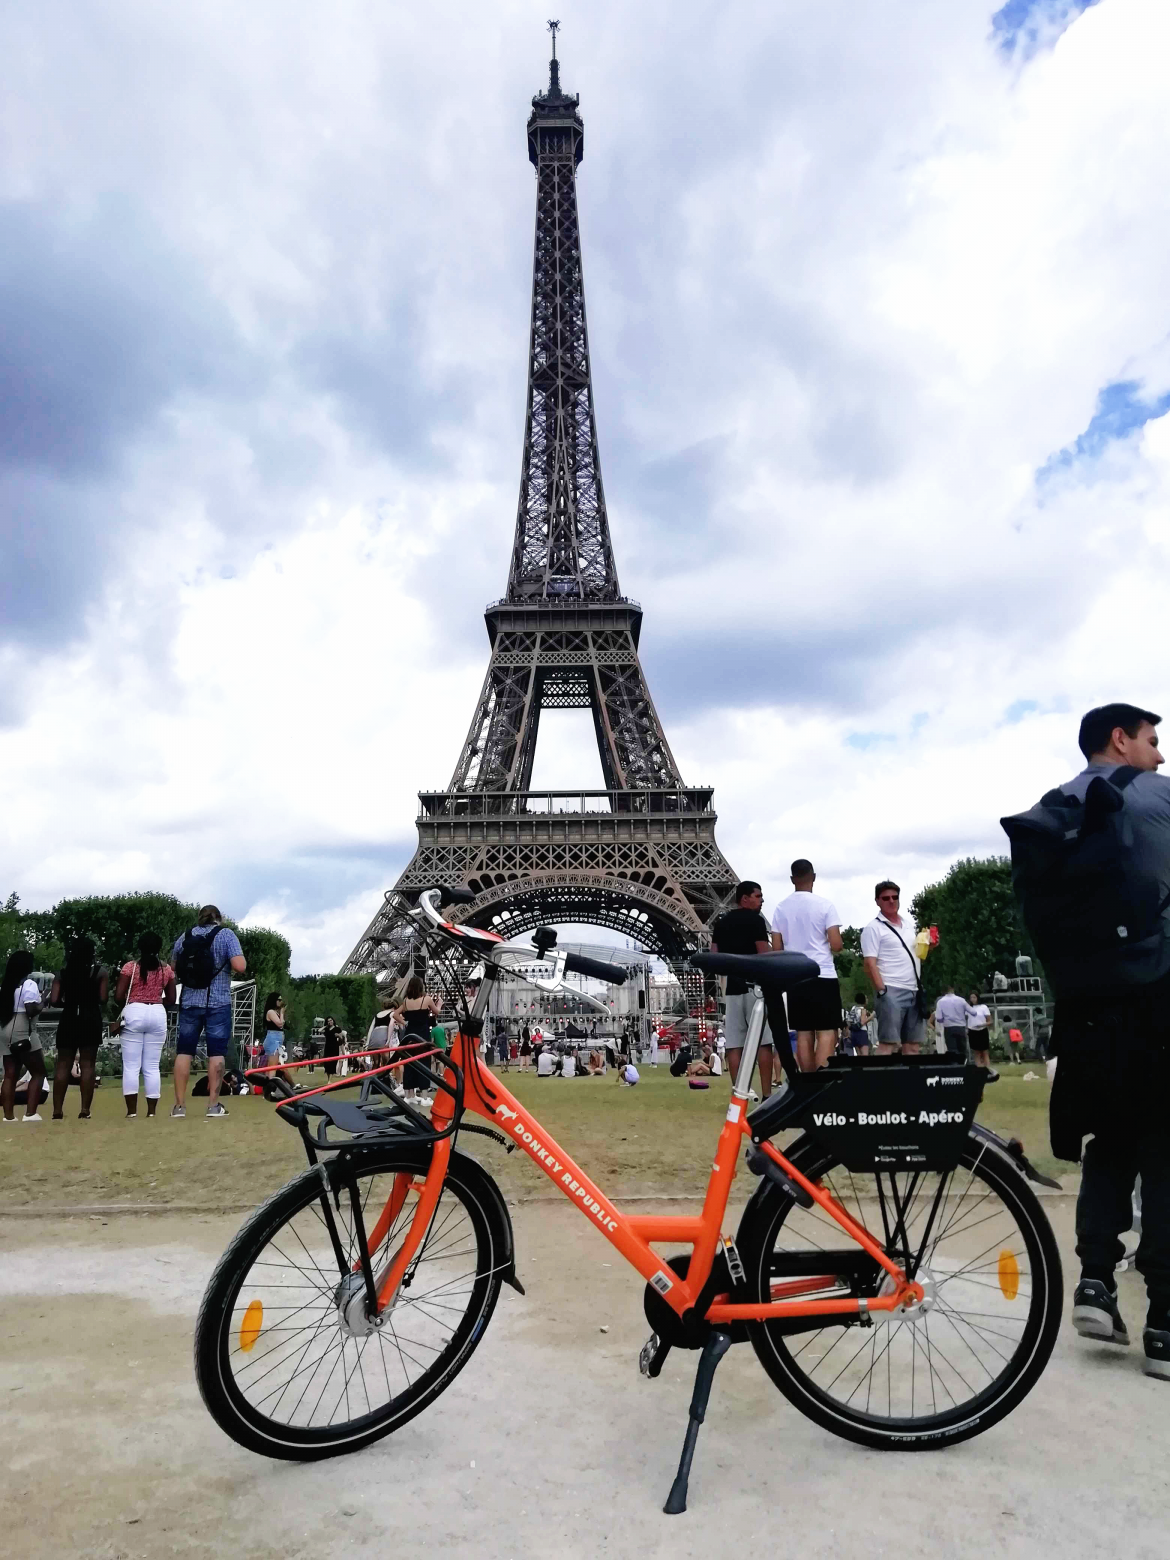 Danskere bygger bycykel til Tour de France-startby